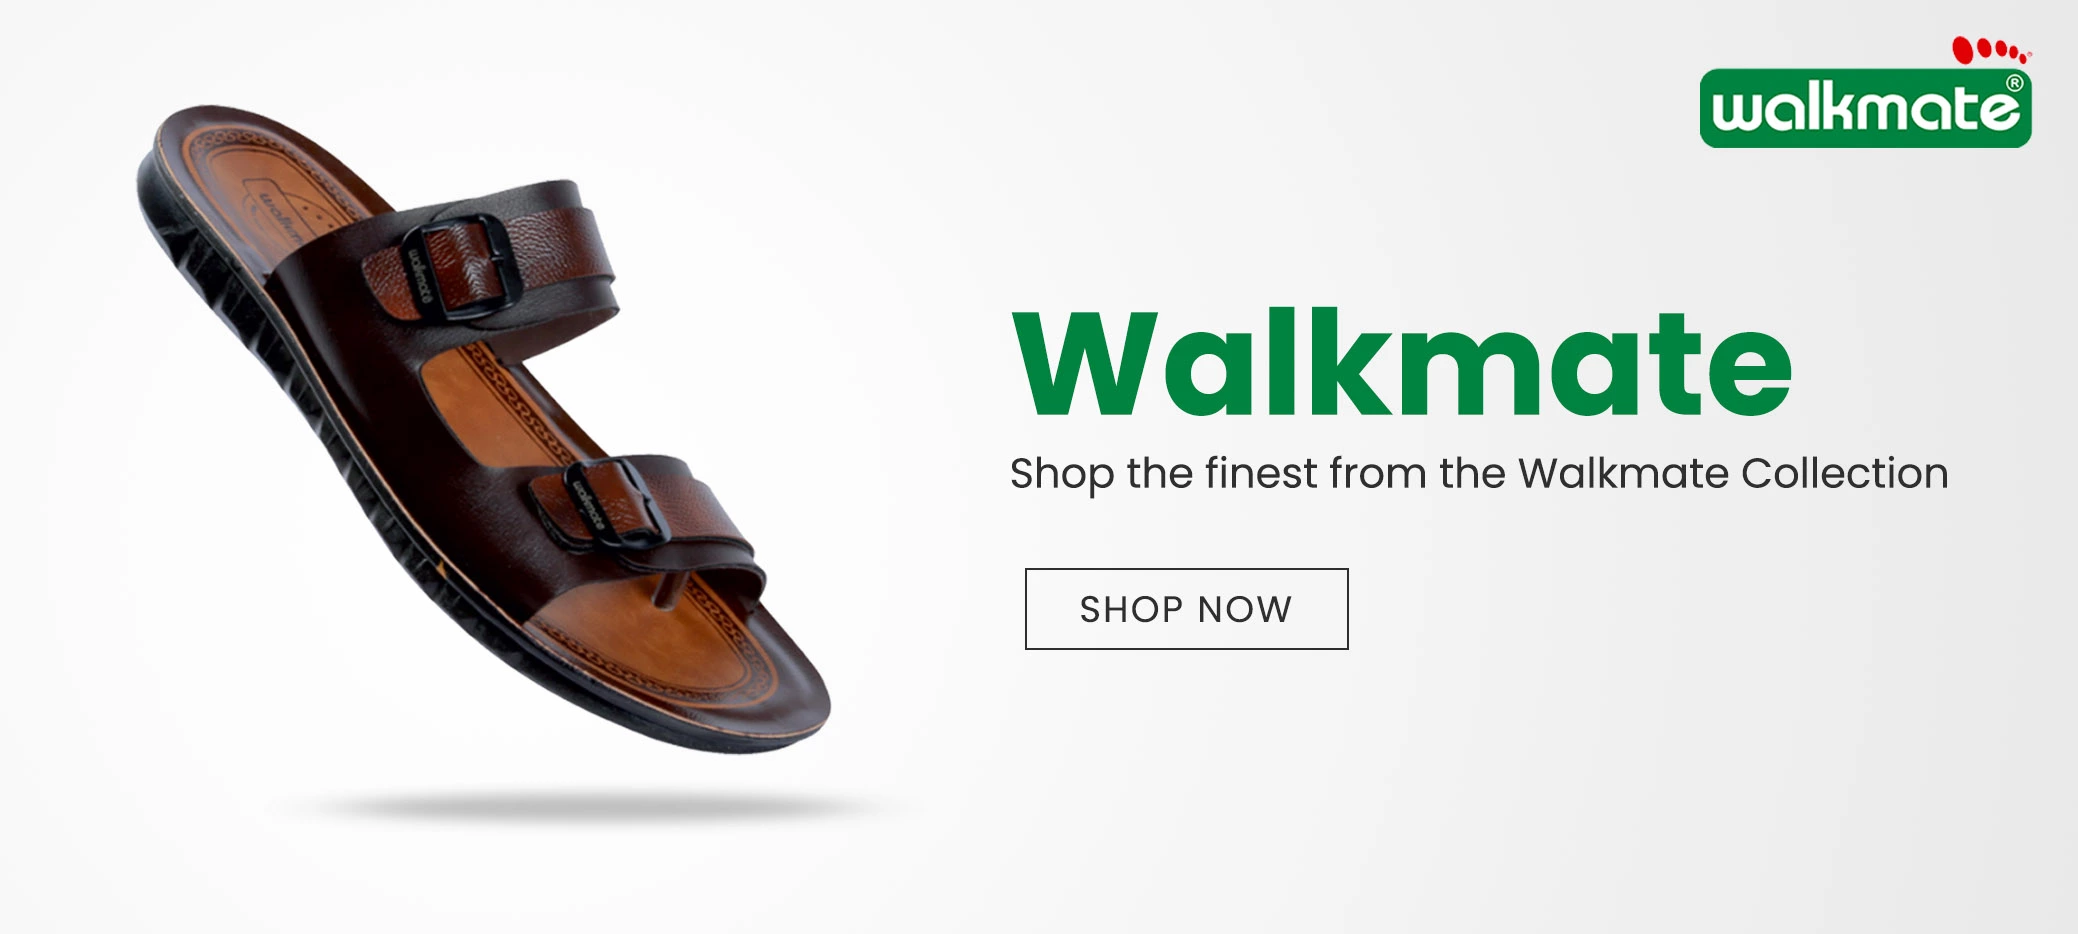 Walkmate footwear banner